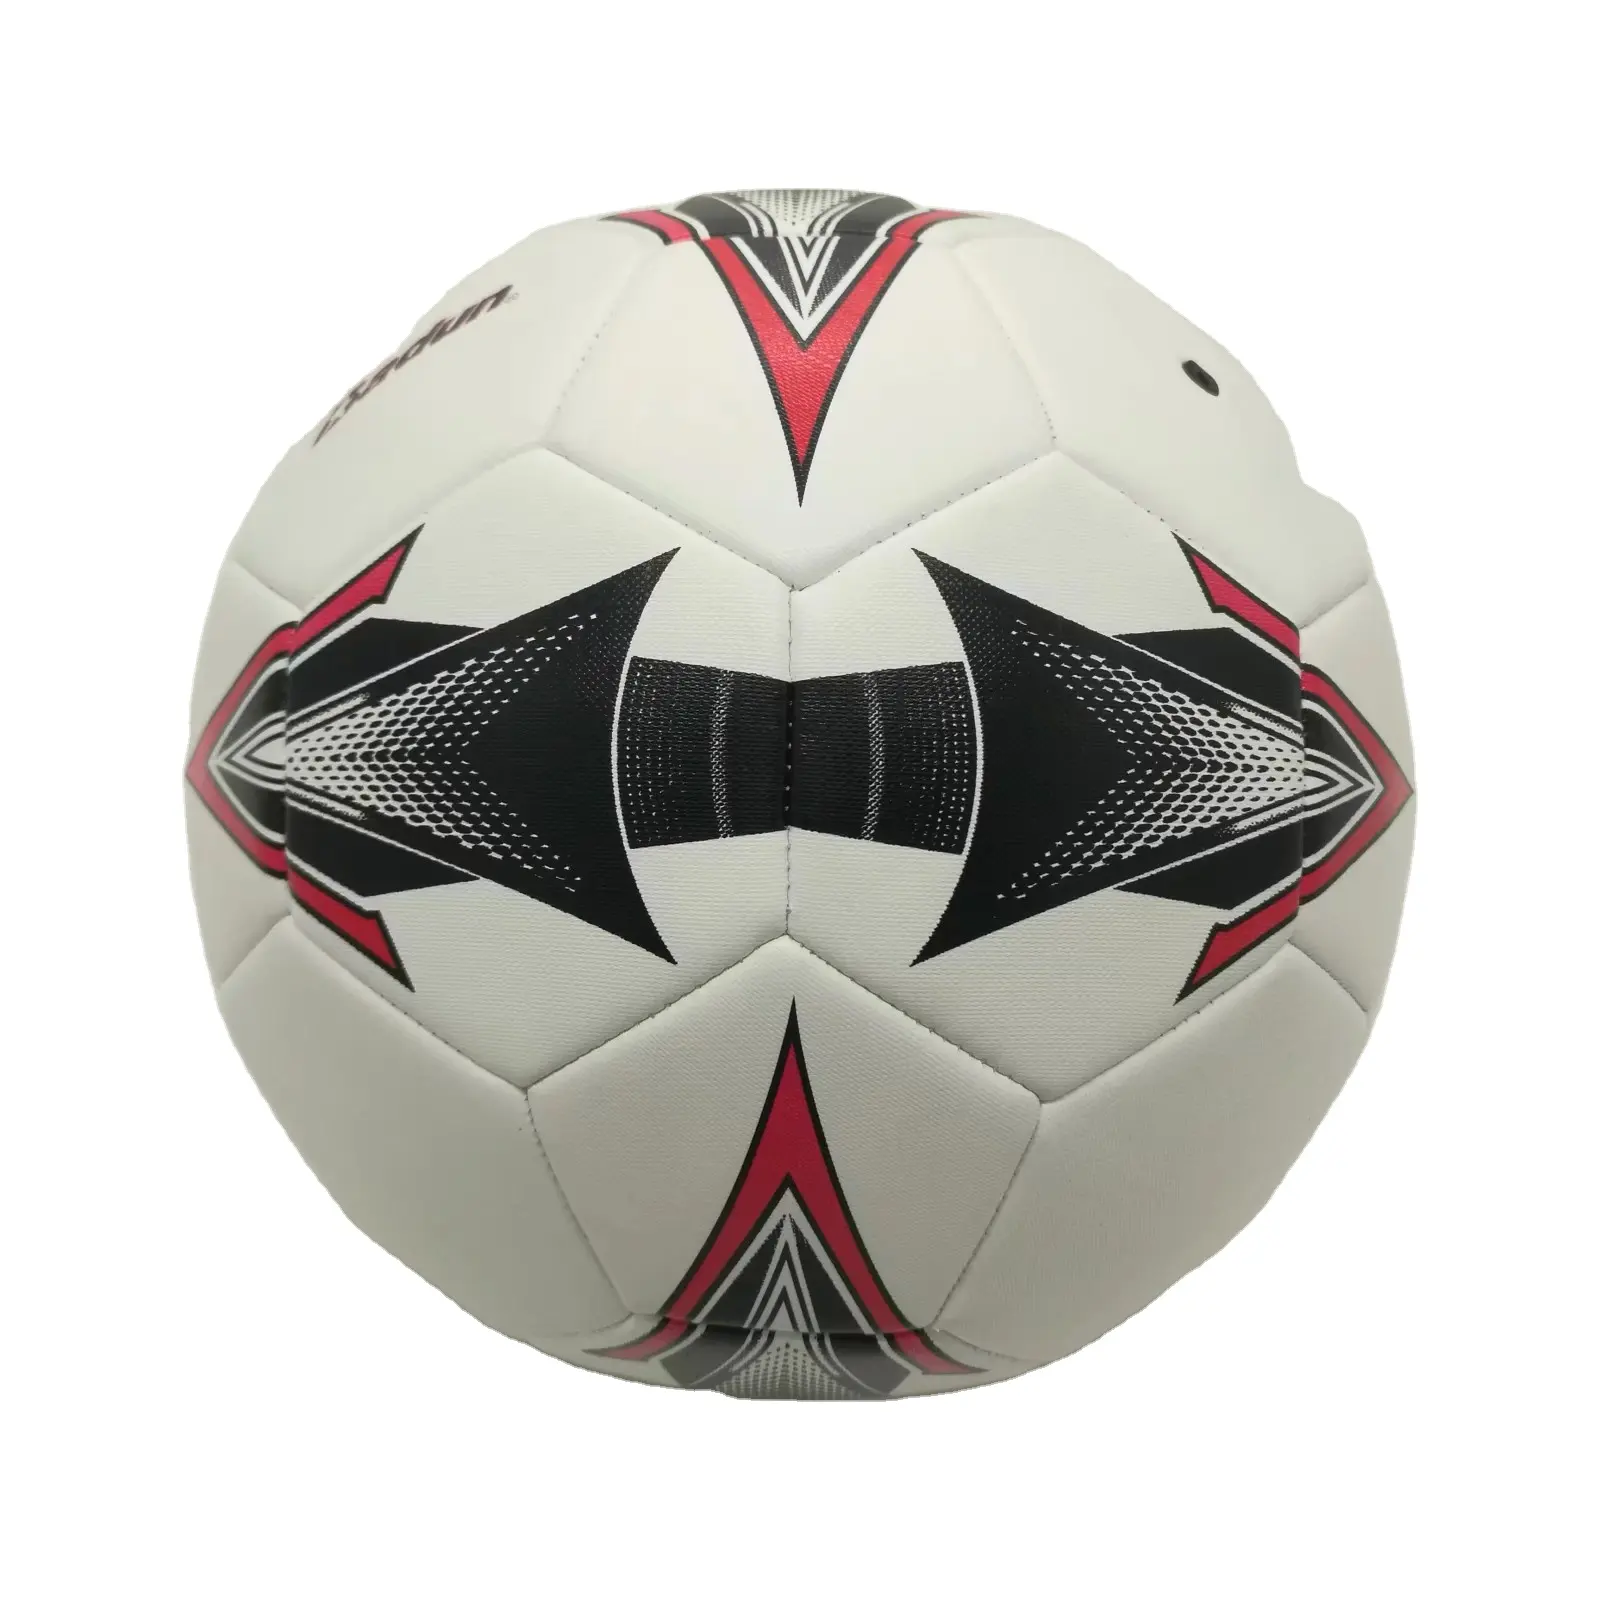 Оптовая продажа, Pelota De Futbol из искусственной кожи, размер 5, футбольный мяч, Распродажа дешевых футбольных мячей